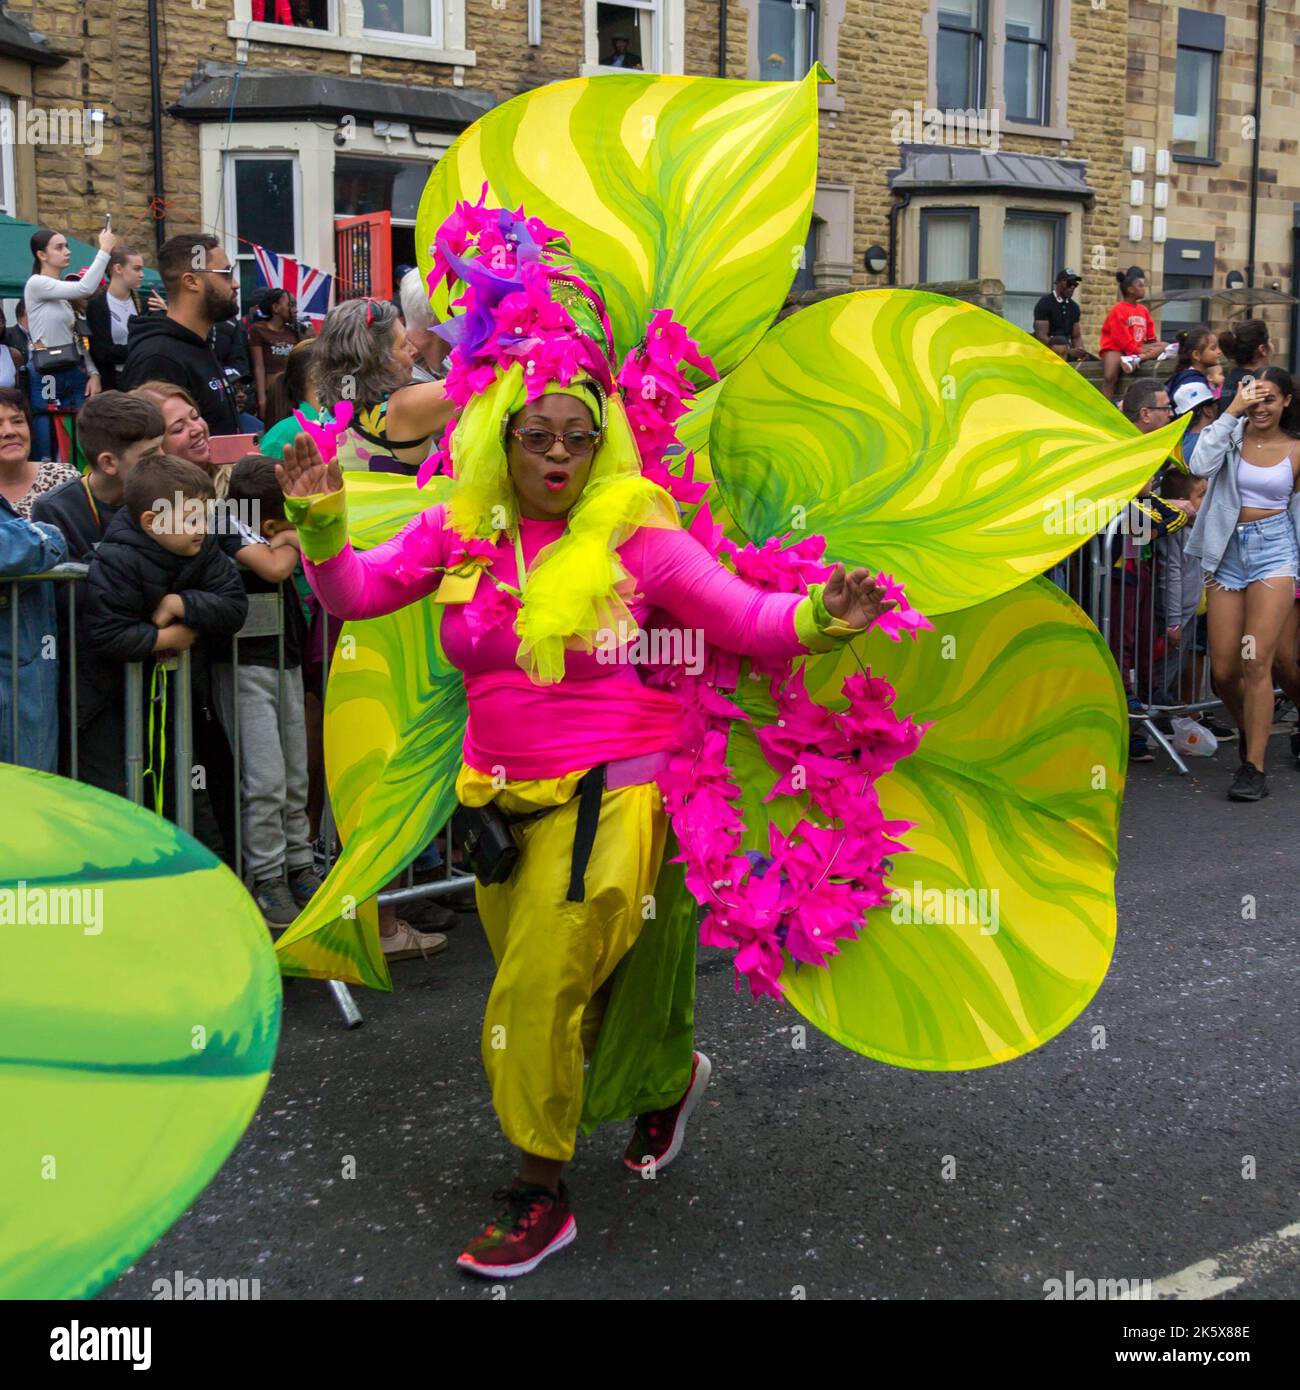 Femme en costume de fleur coloré à Leeds West Indian Carnival Parade Banque D'Images